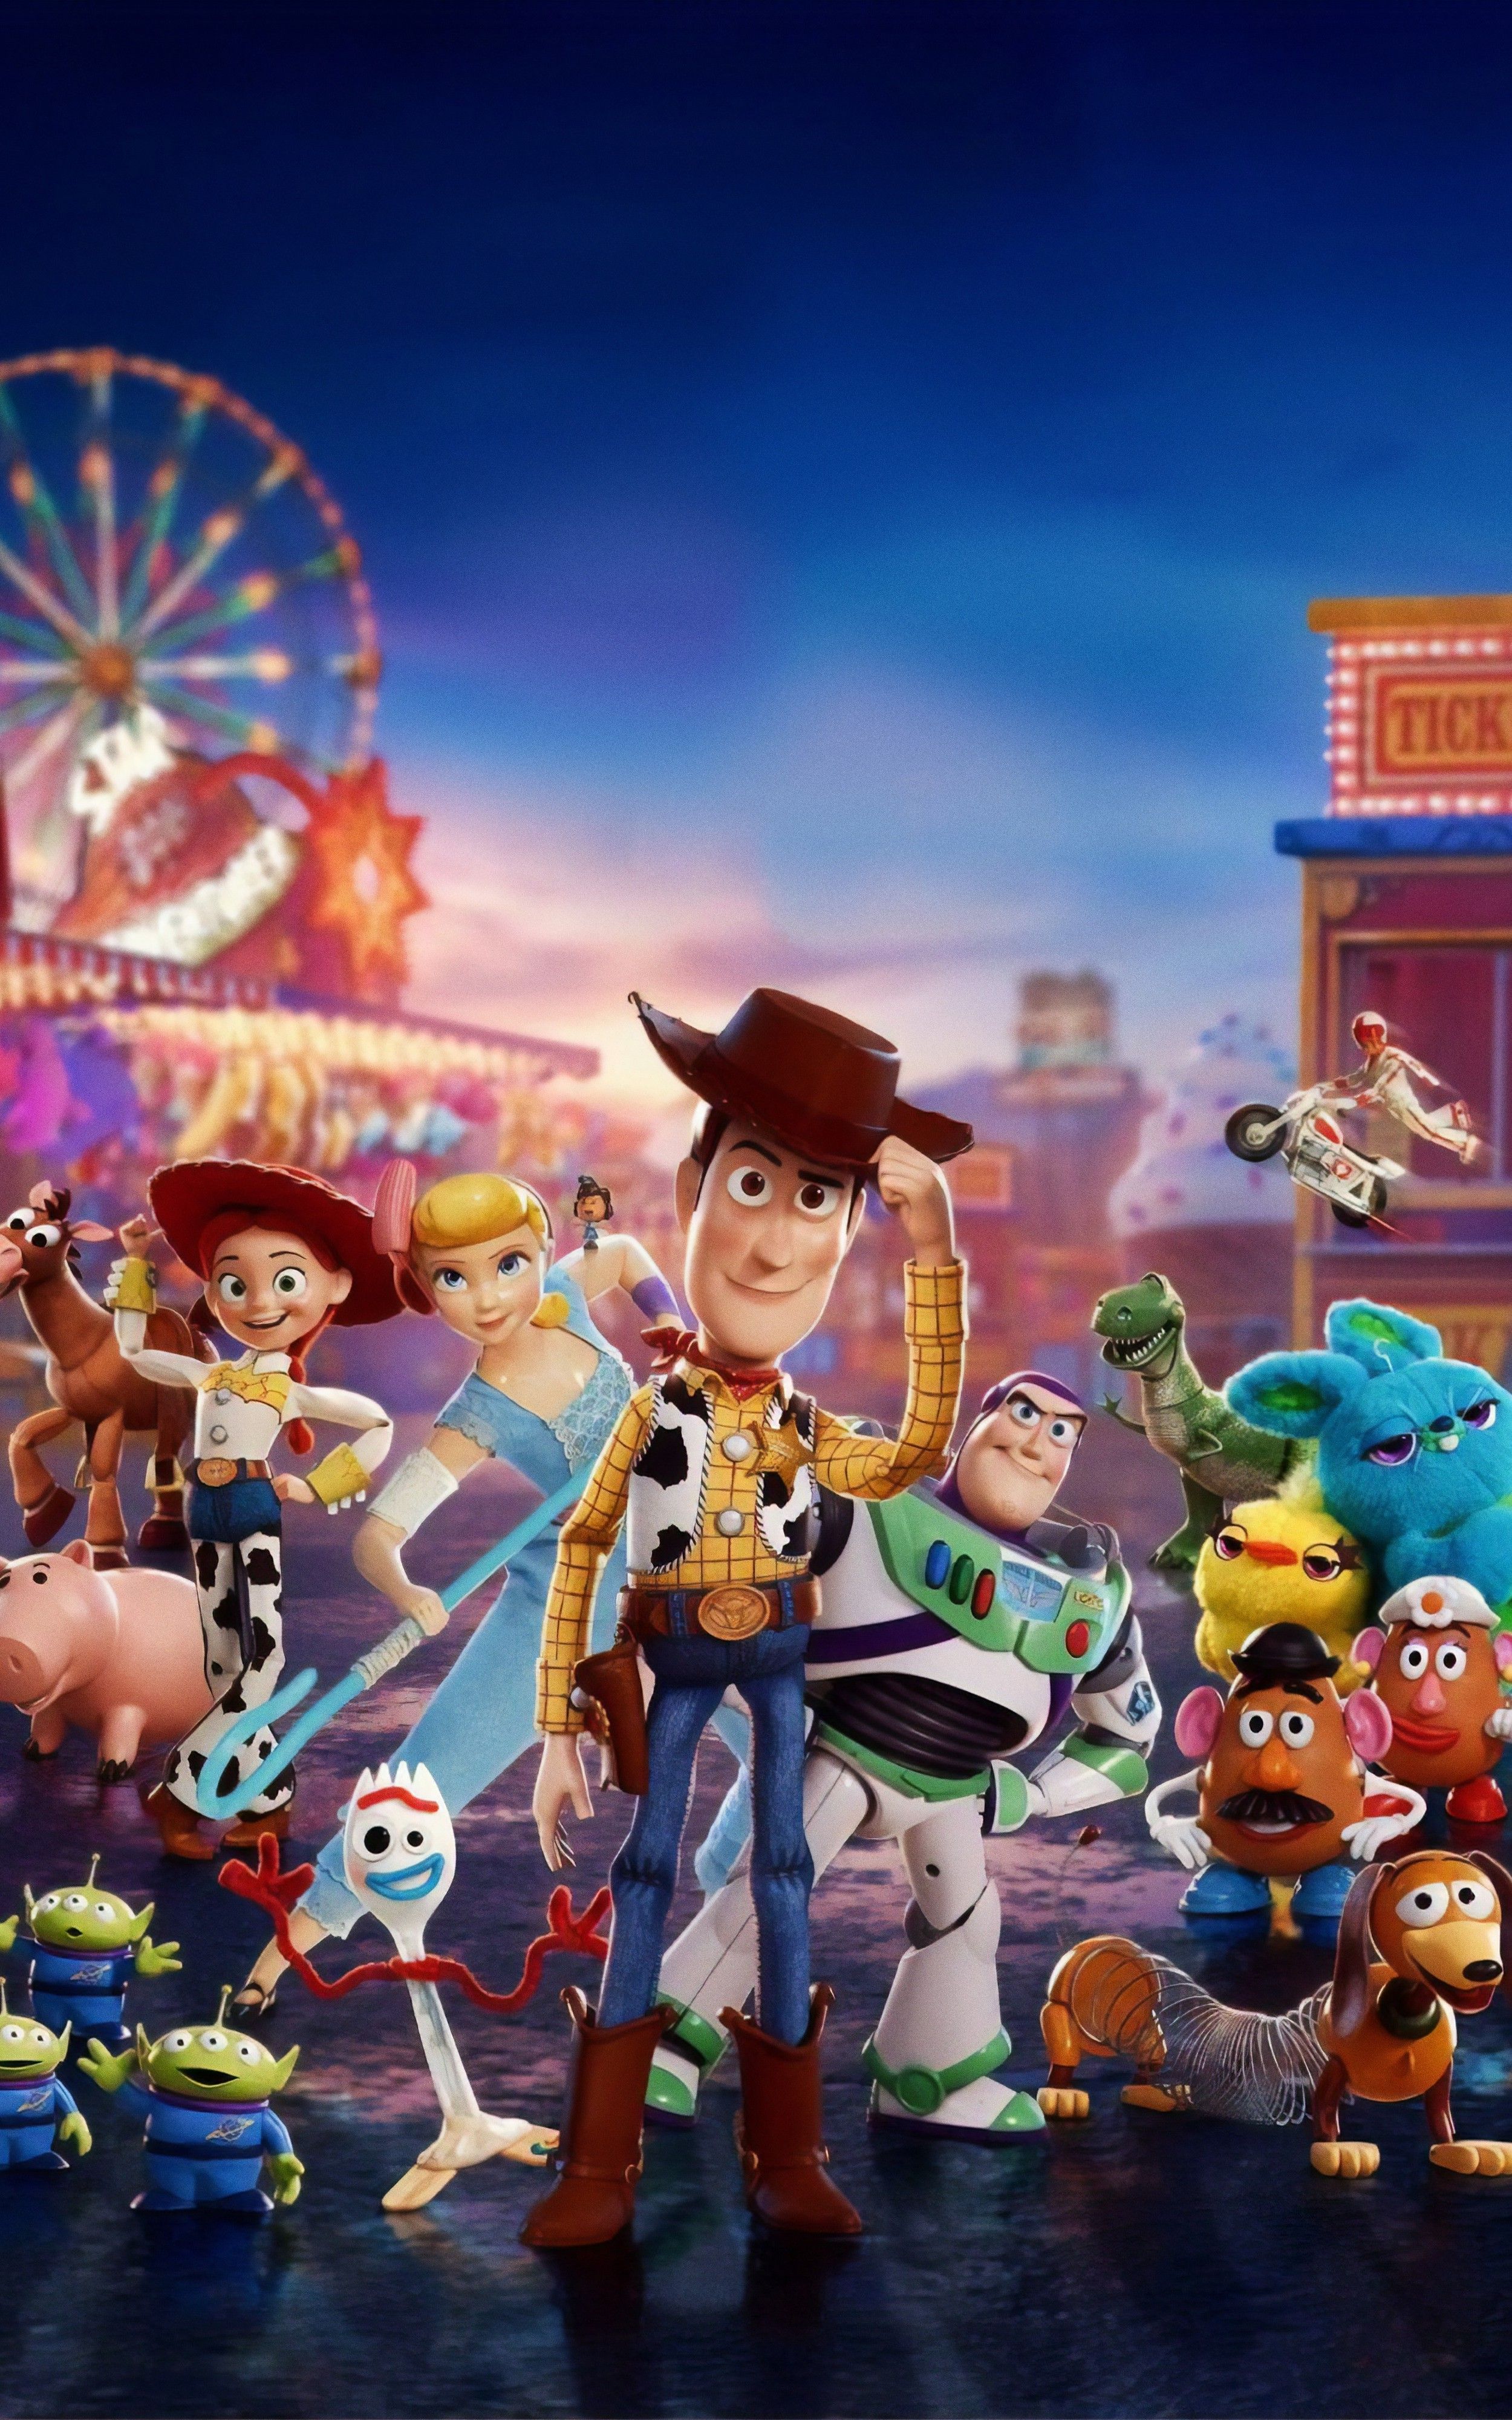 WallpaperDog mang đến cho bạn những hình nền đồ chơi Toy Story rực rỡ và ấn tượng nhất. Tận hưởng niềm vui khi được chiêm ngưỡng các nhân vật yêu thích của bạn như Woody, Buzz và các đồ chơi khác trên nền đen thanh lịch. Hãy đến và khám phá tất cả các lựa chọn độc đáo trên WallpaperDog để tìm ra hình nền yêu thích của bạn. 